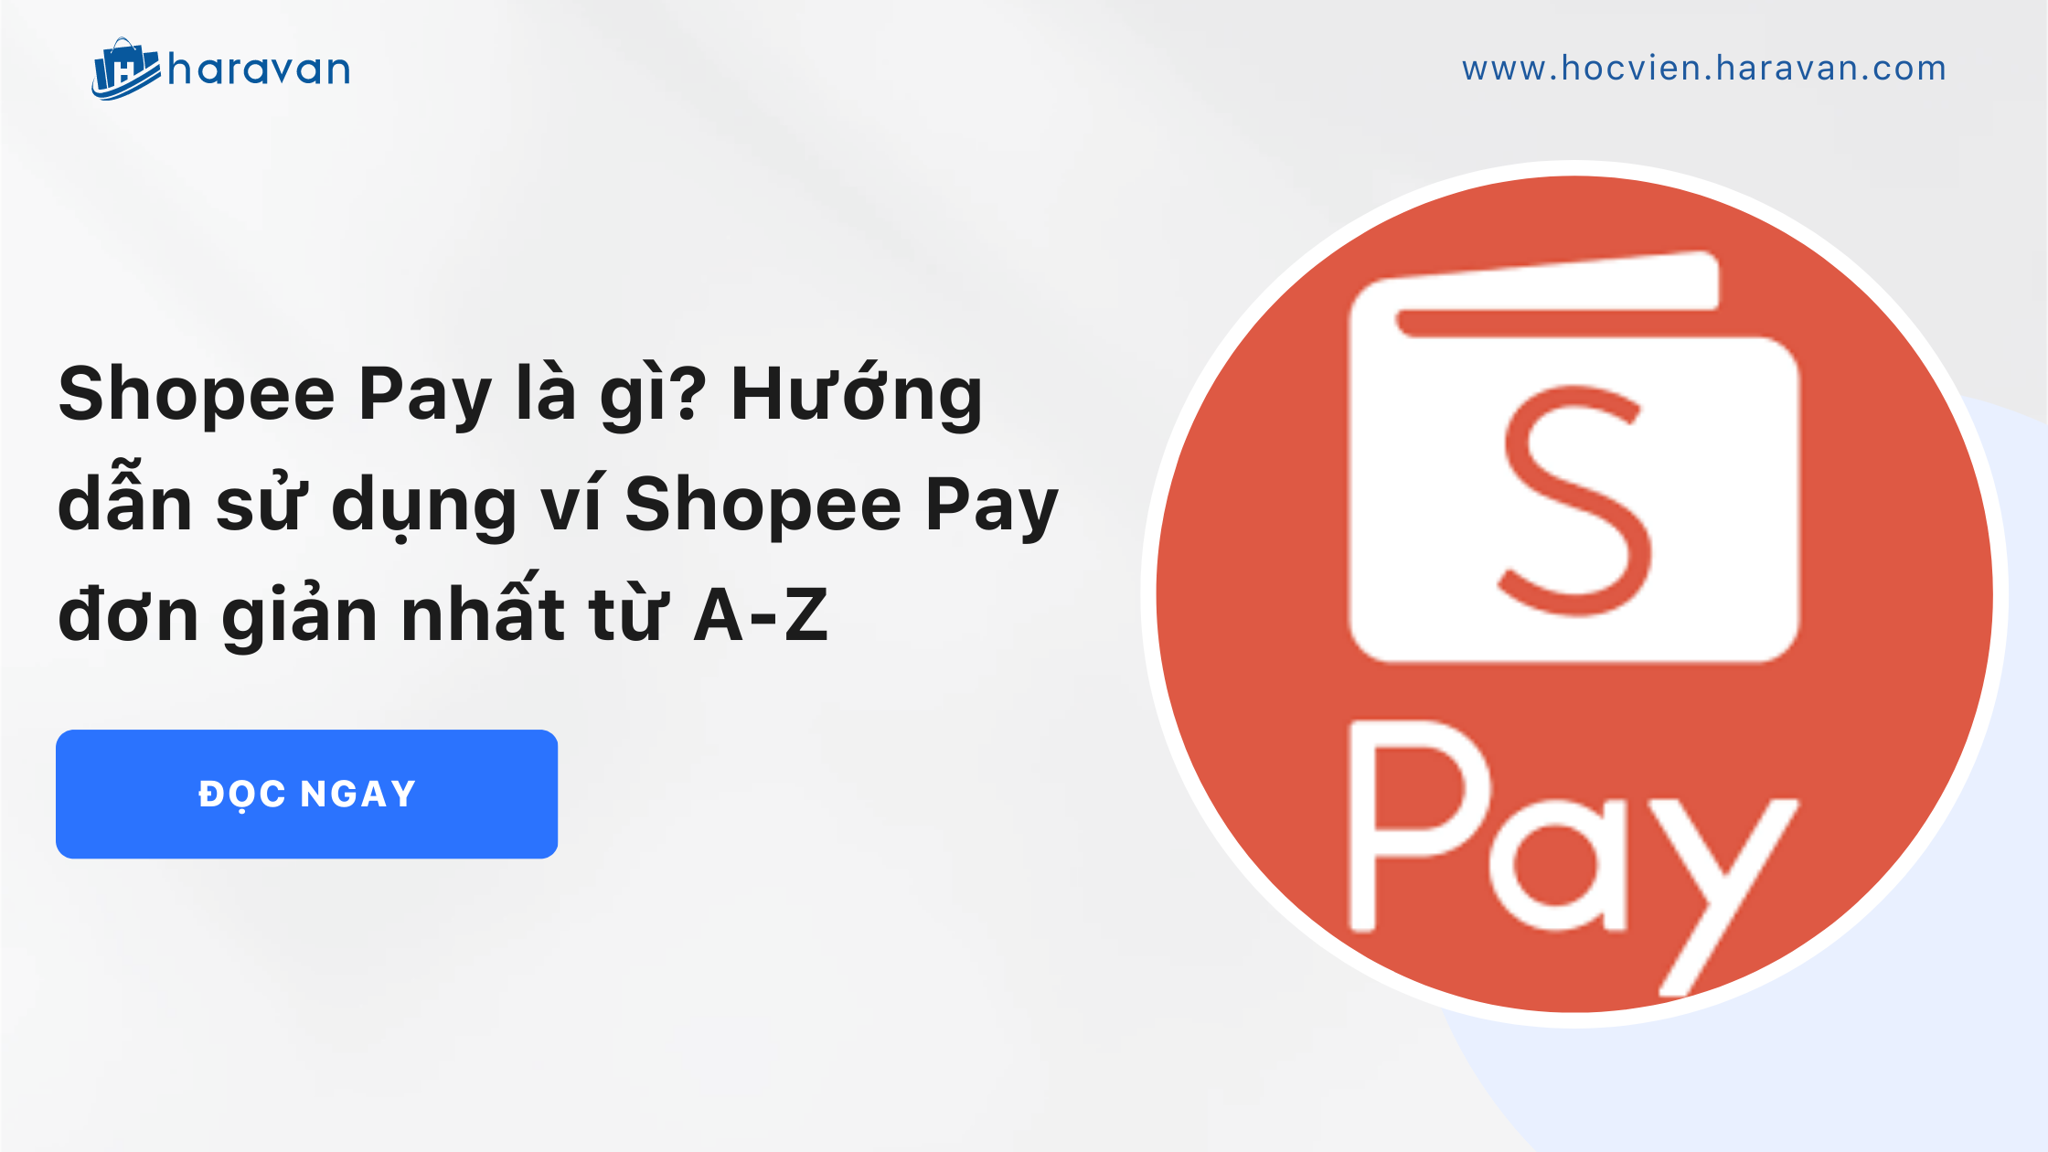 Shopee Pay là gì? Hướng dẫn sử dụng ví Shopee Pay đơn giản nhất từ A-Z